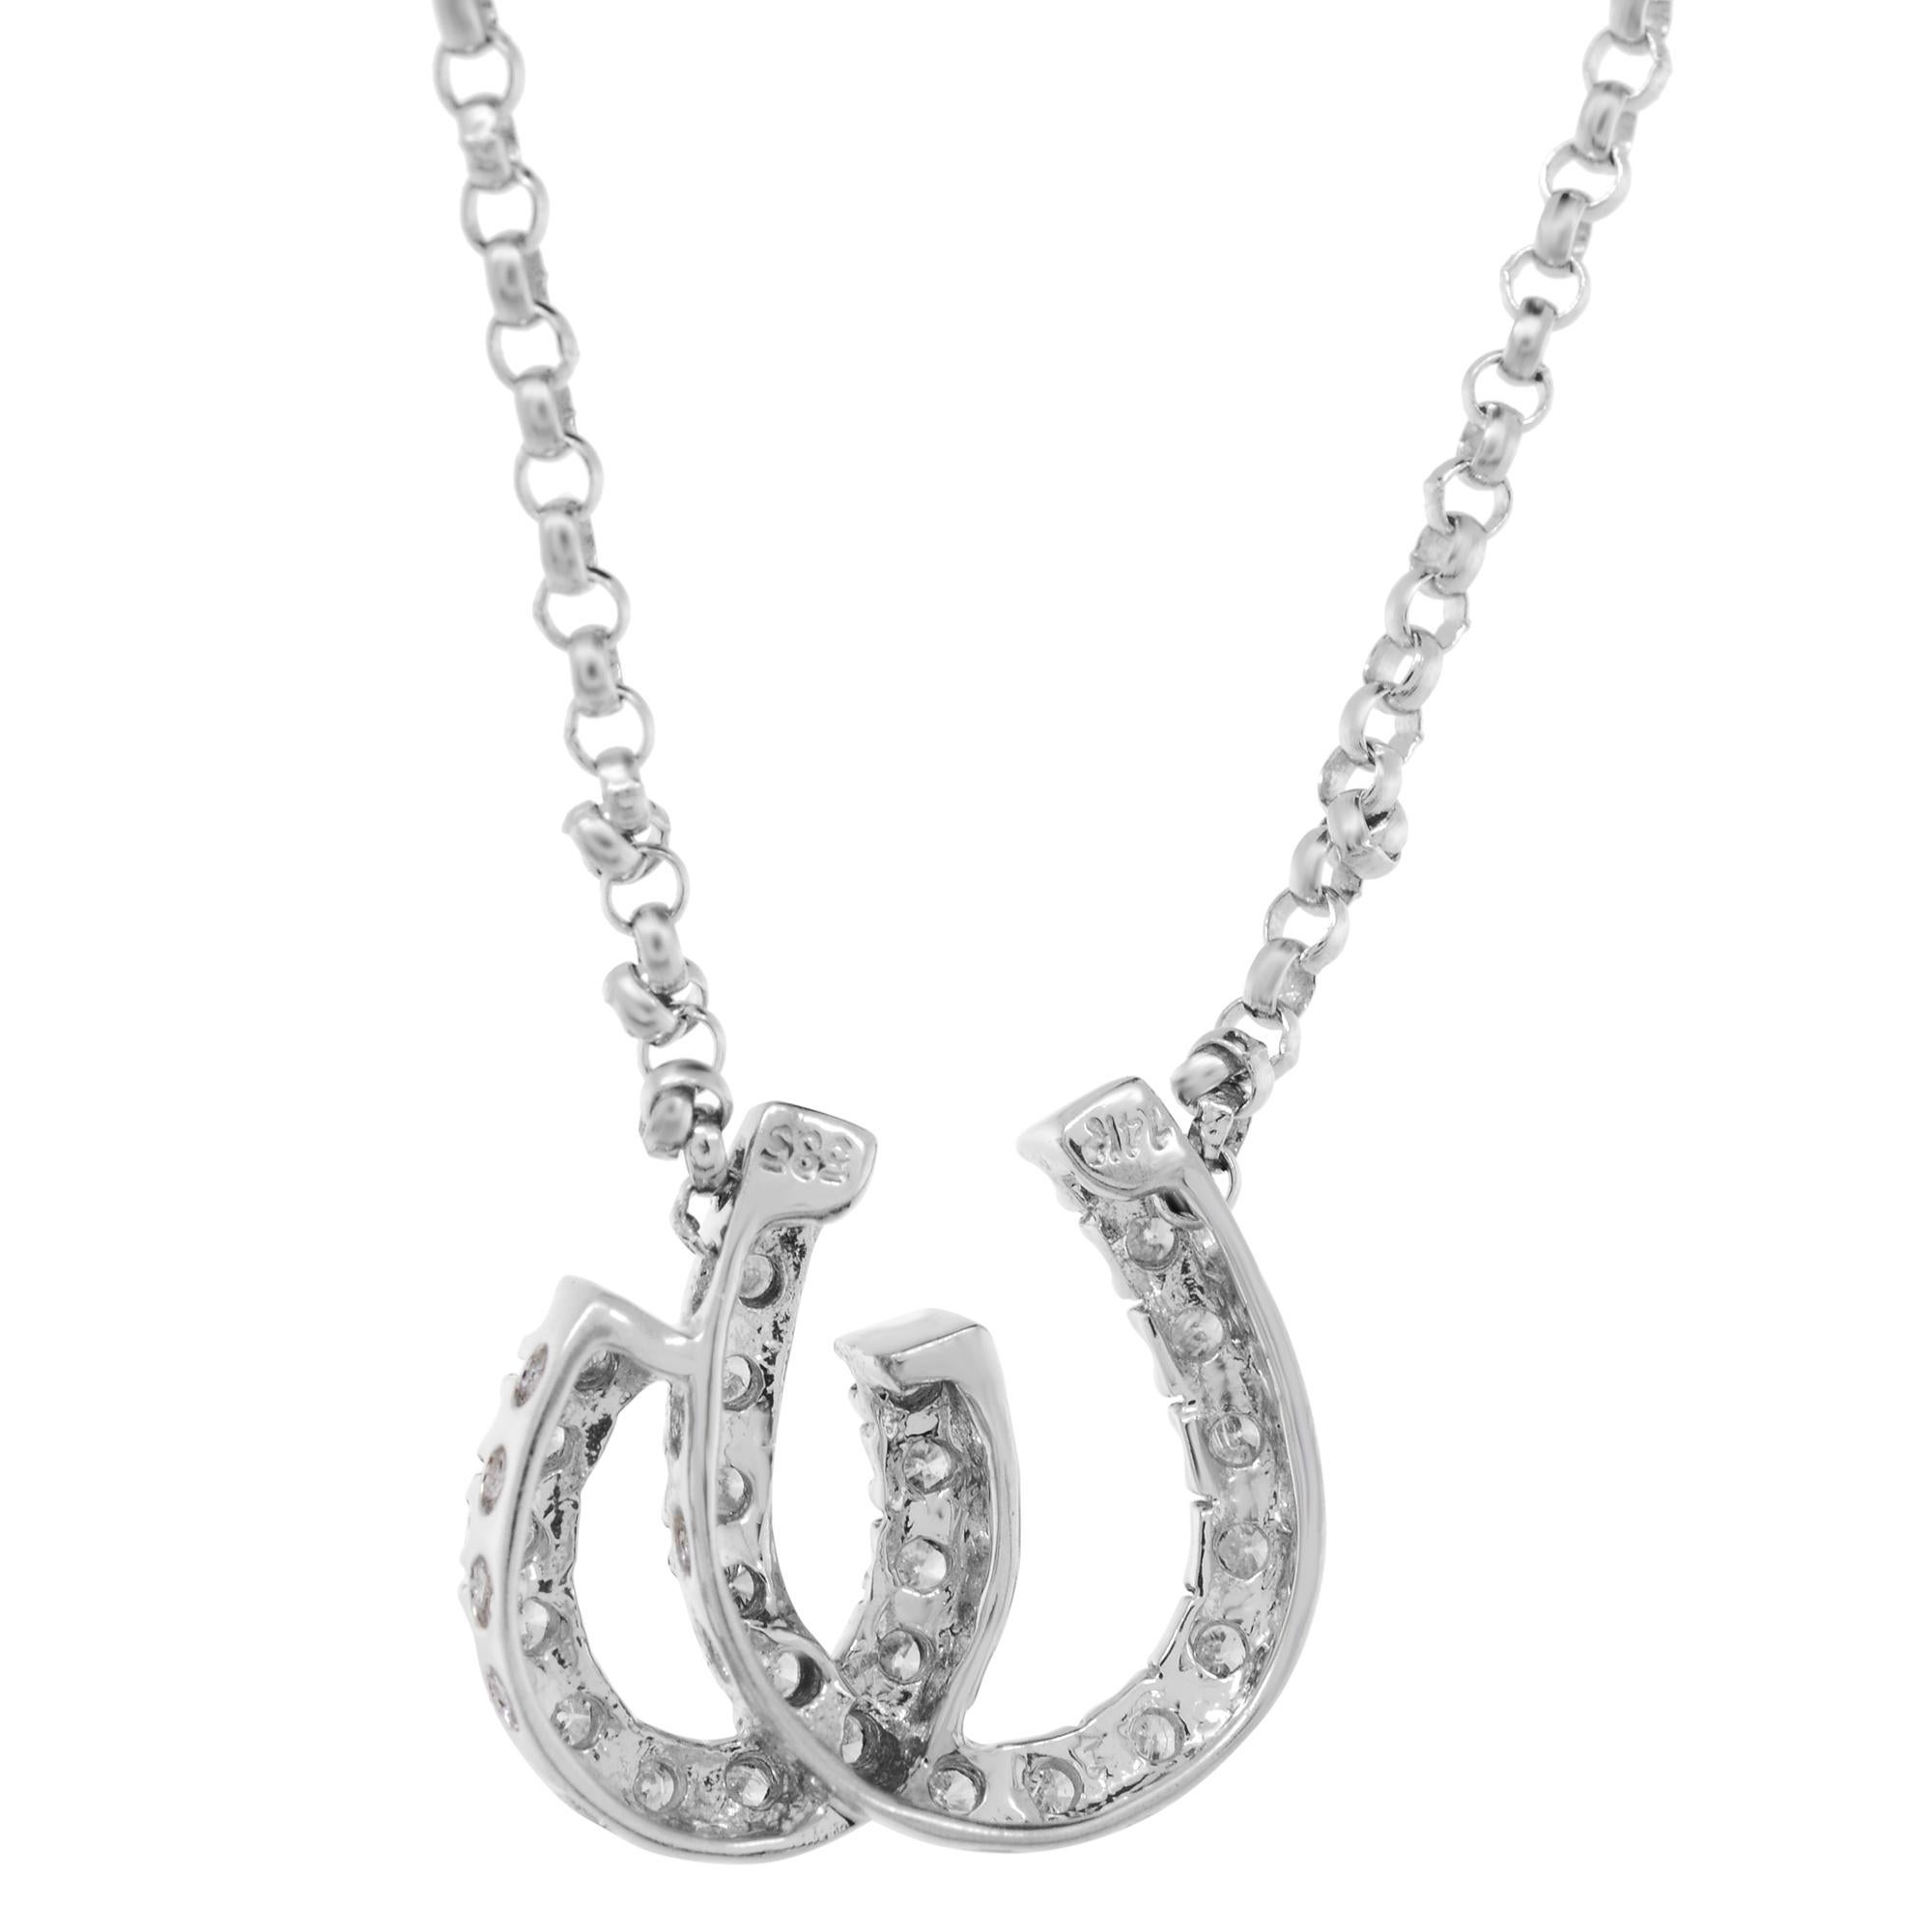 Modern Rachel Koen Horseshoe Diamond Charm Pendant Necklace 14k White Gold 0.20Cttw For Sale